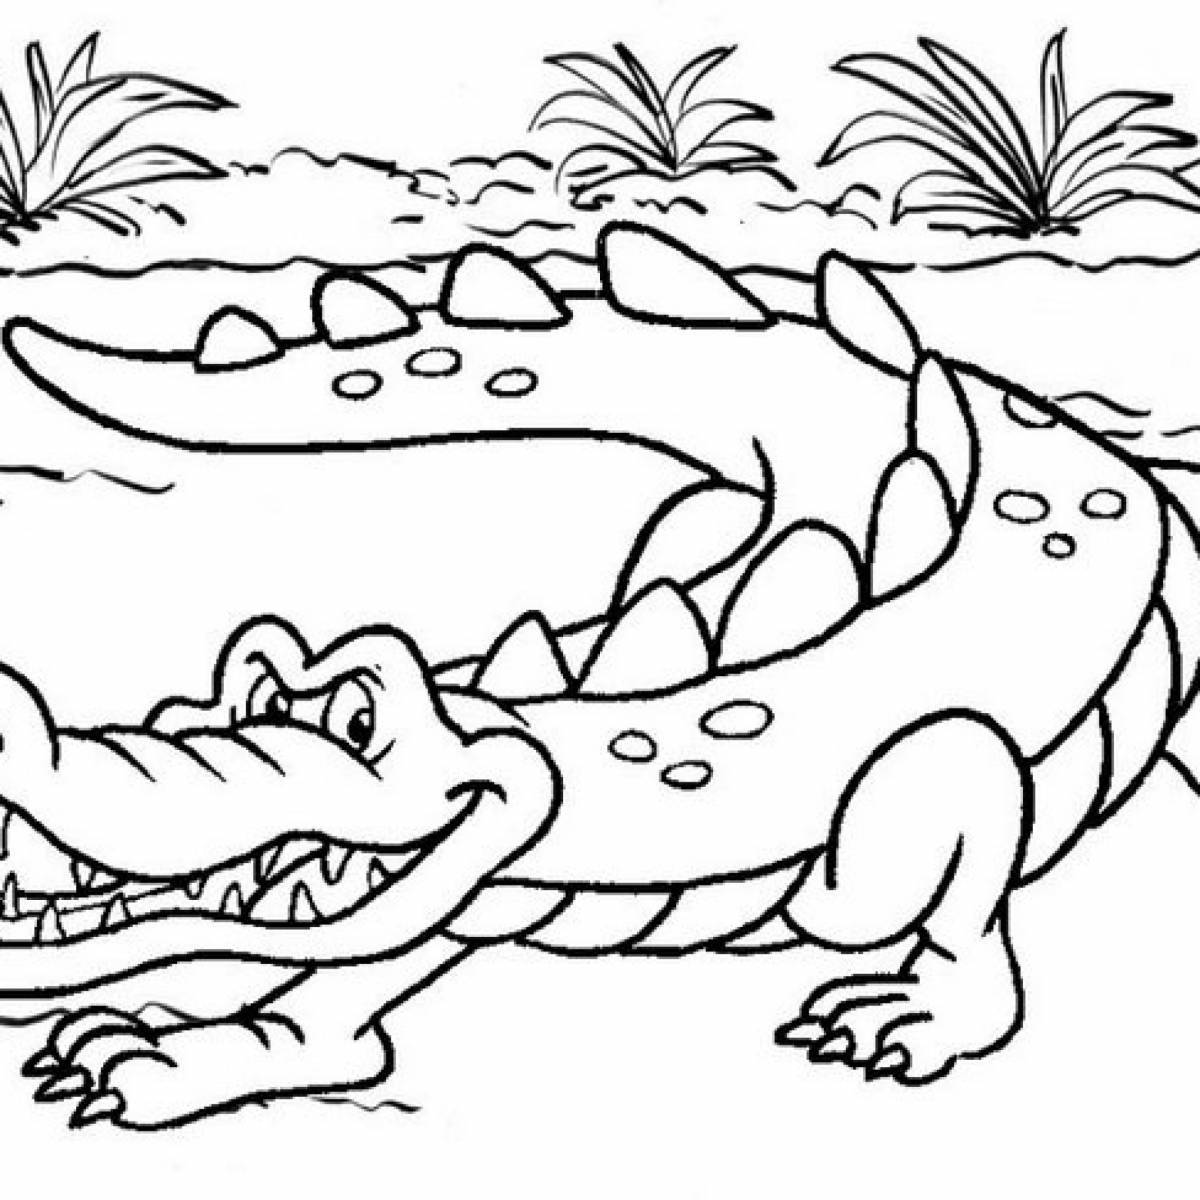 Увлекательная раскраска крокодил для детей